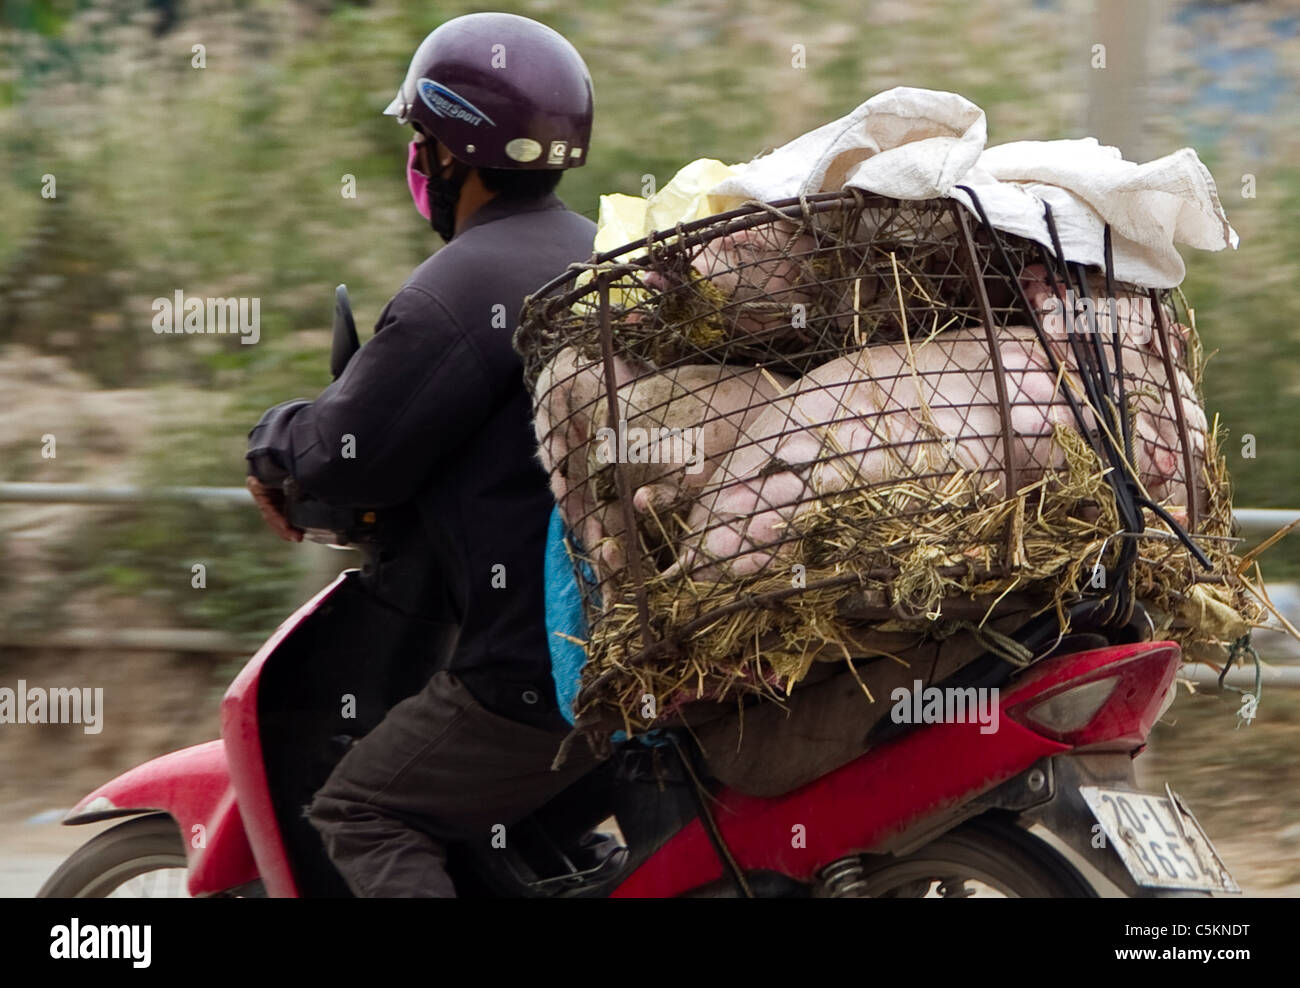 Motorbike carrying pigs , Hanoi, Vietnam Stock Photo